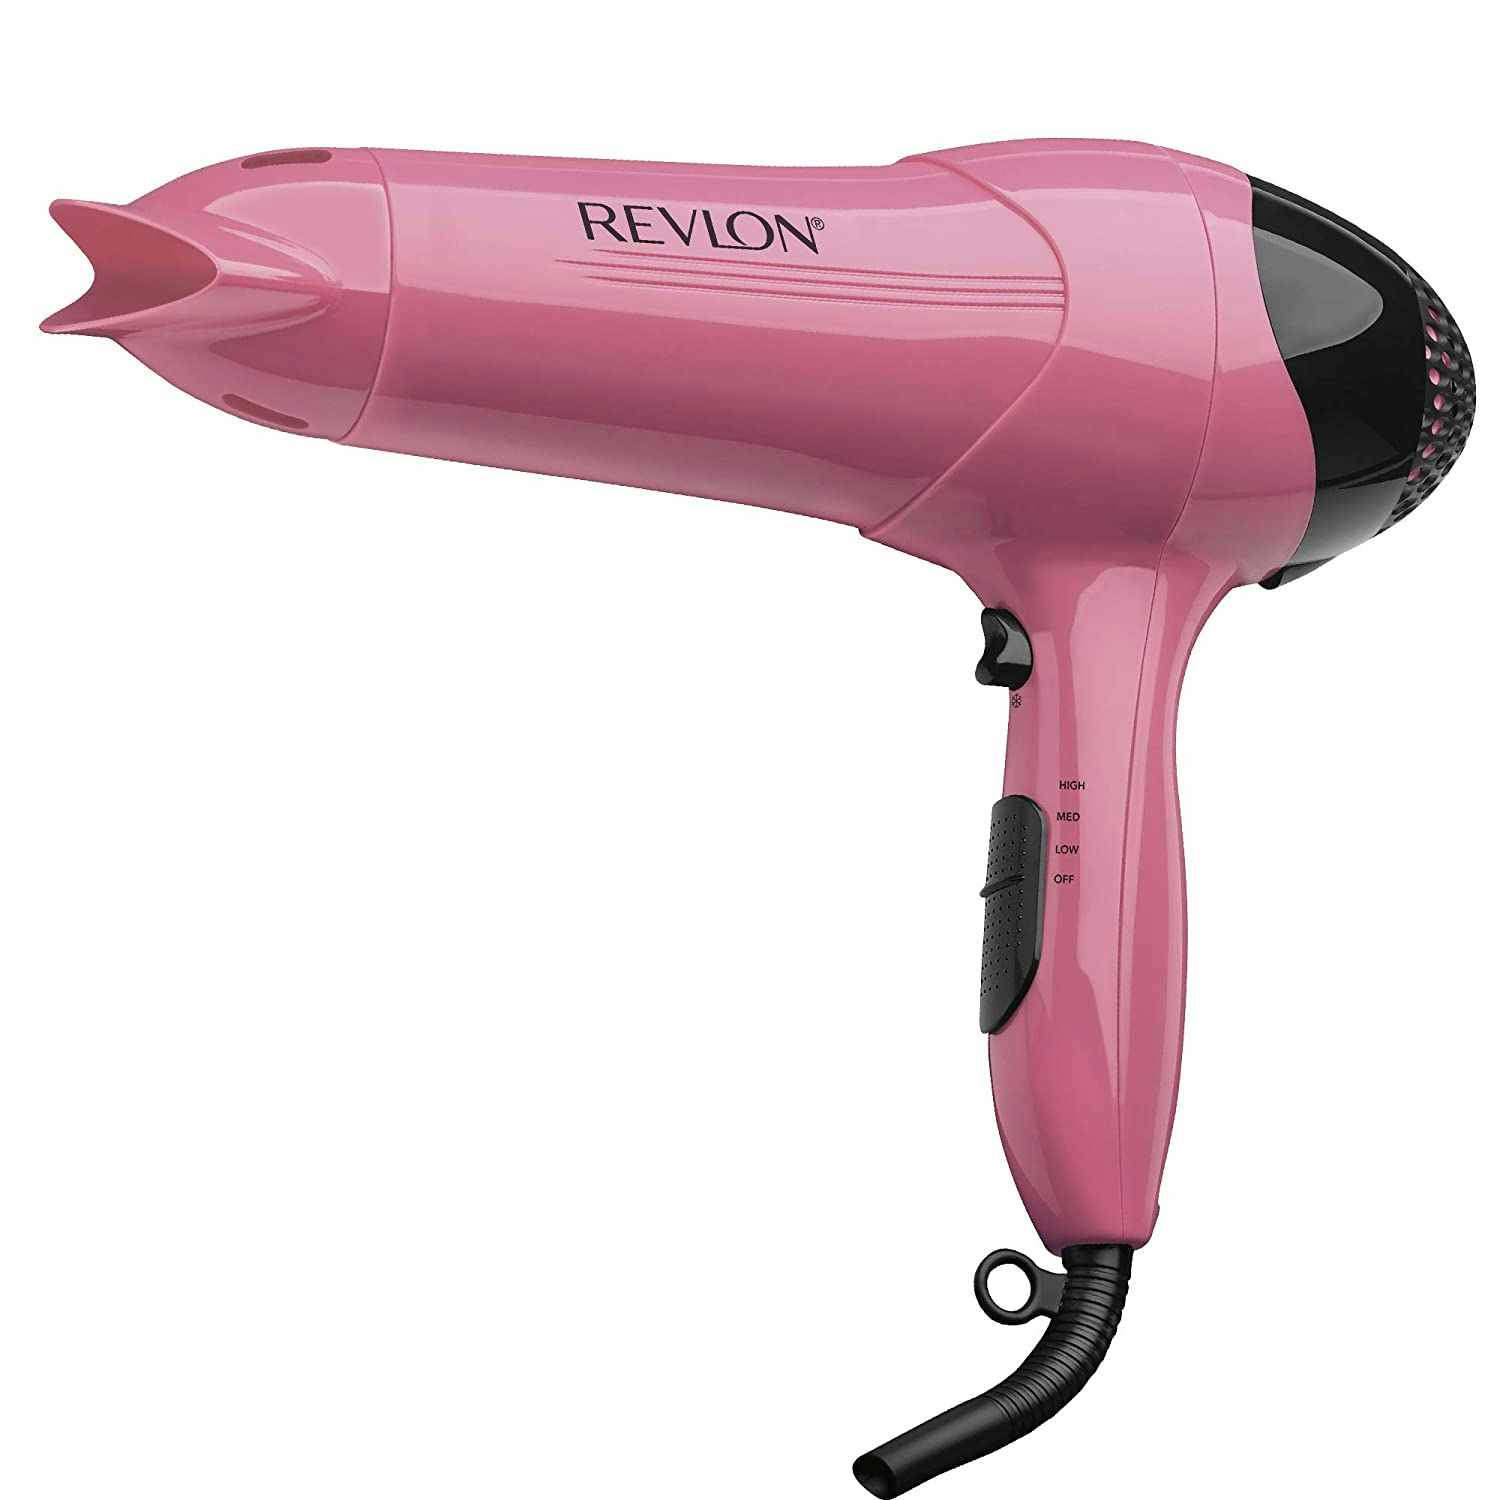 A pink Revlon hair dryer.